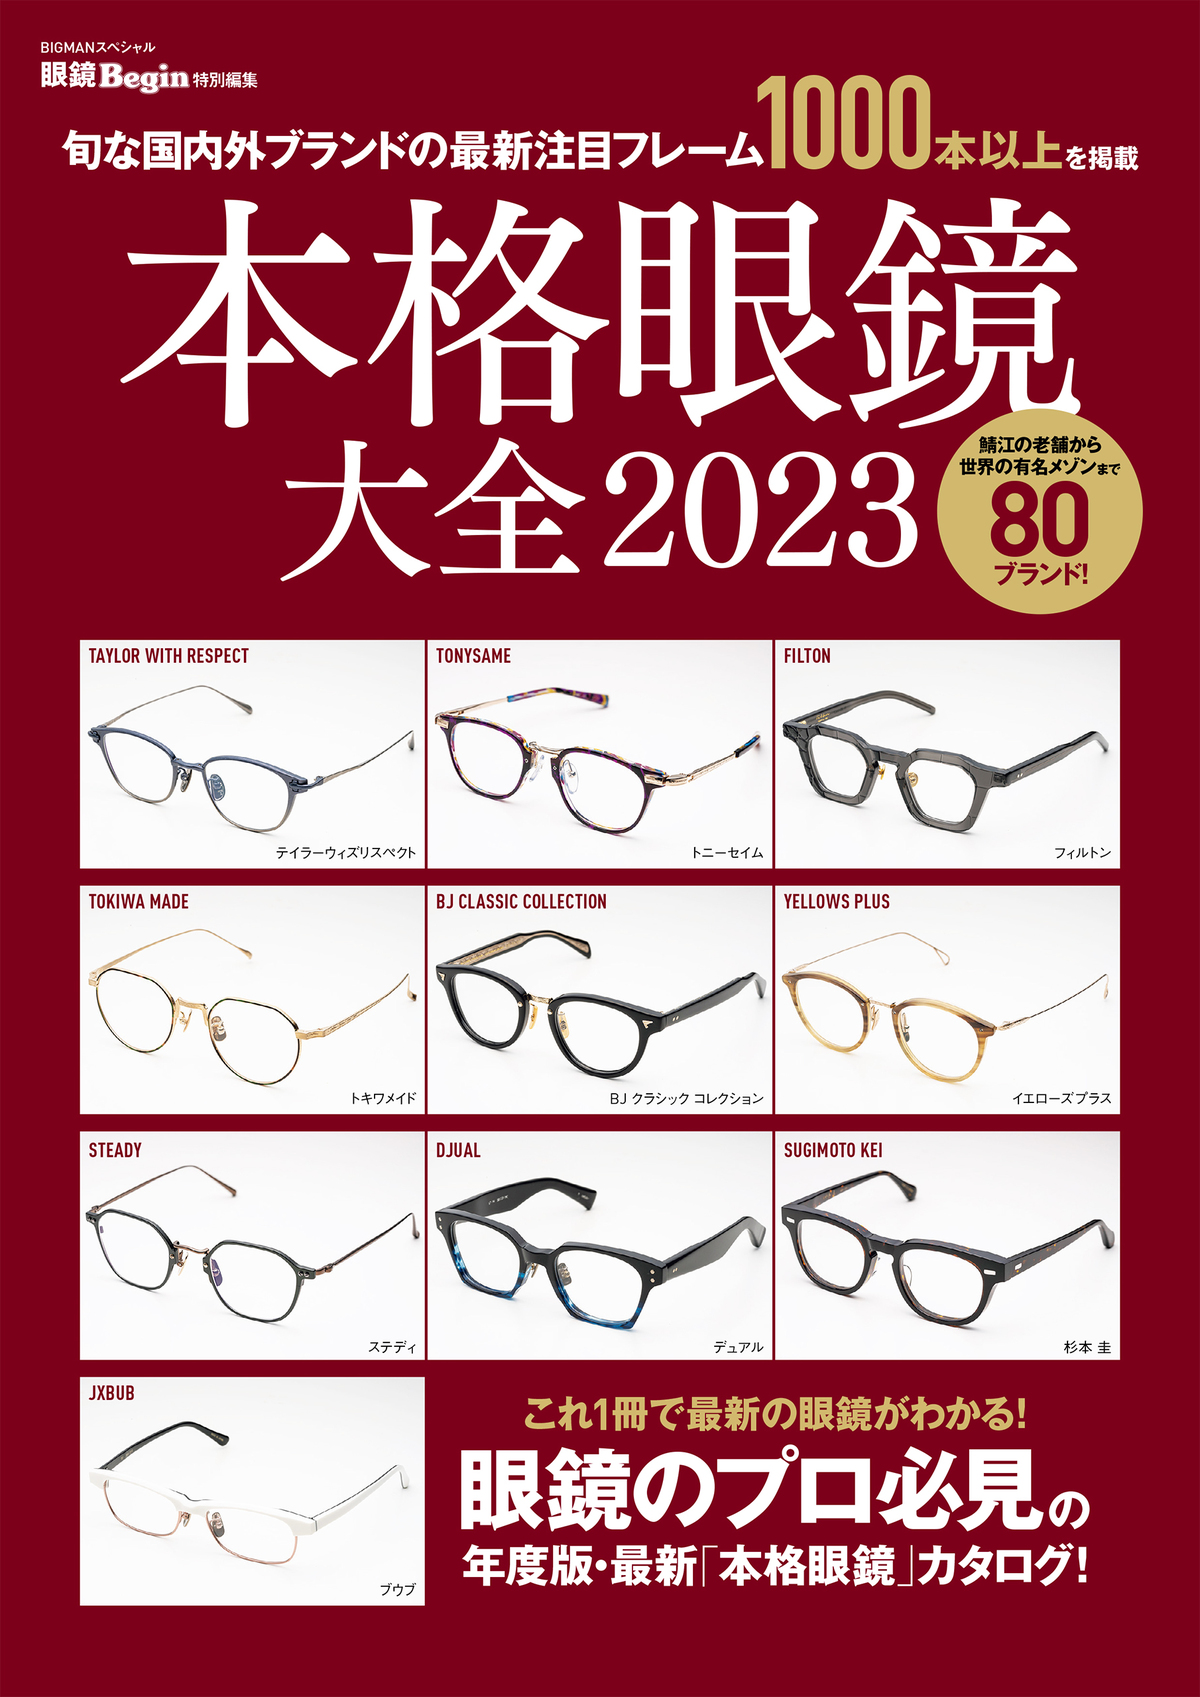 これ1冊で最新の眼鏡がわかる! 旬な国内外ブランドの最新注目フレーム1,000本以上を掲載「本格眼鏡大全 2023」